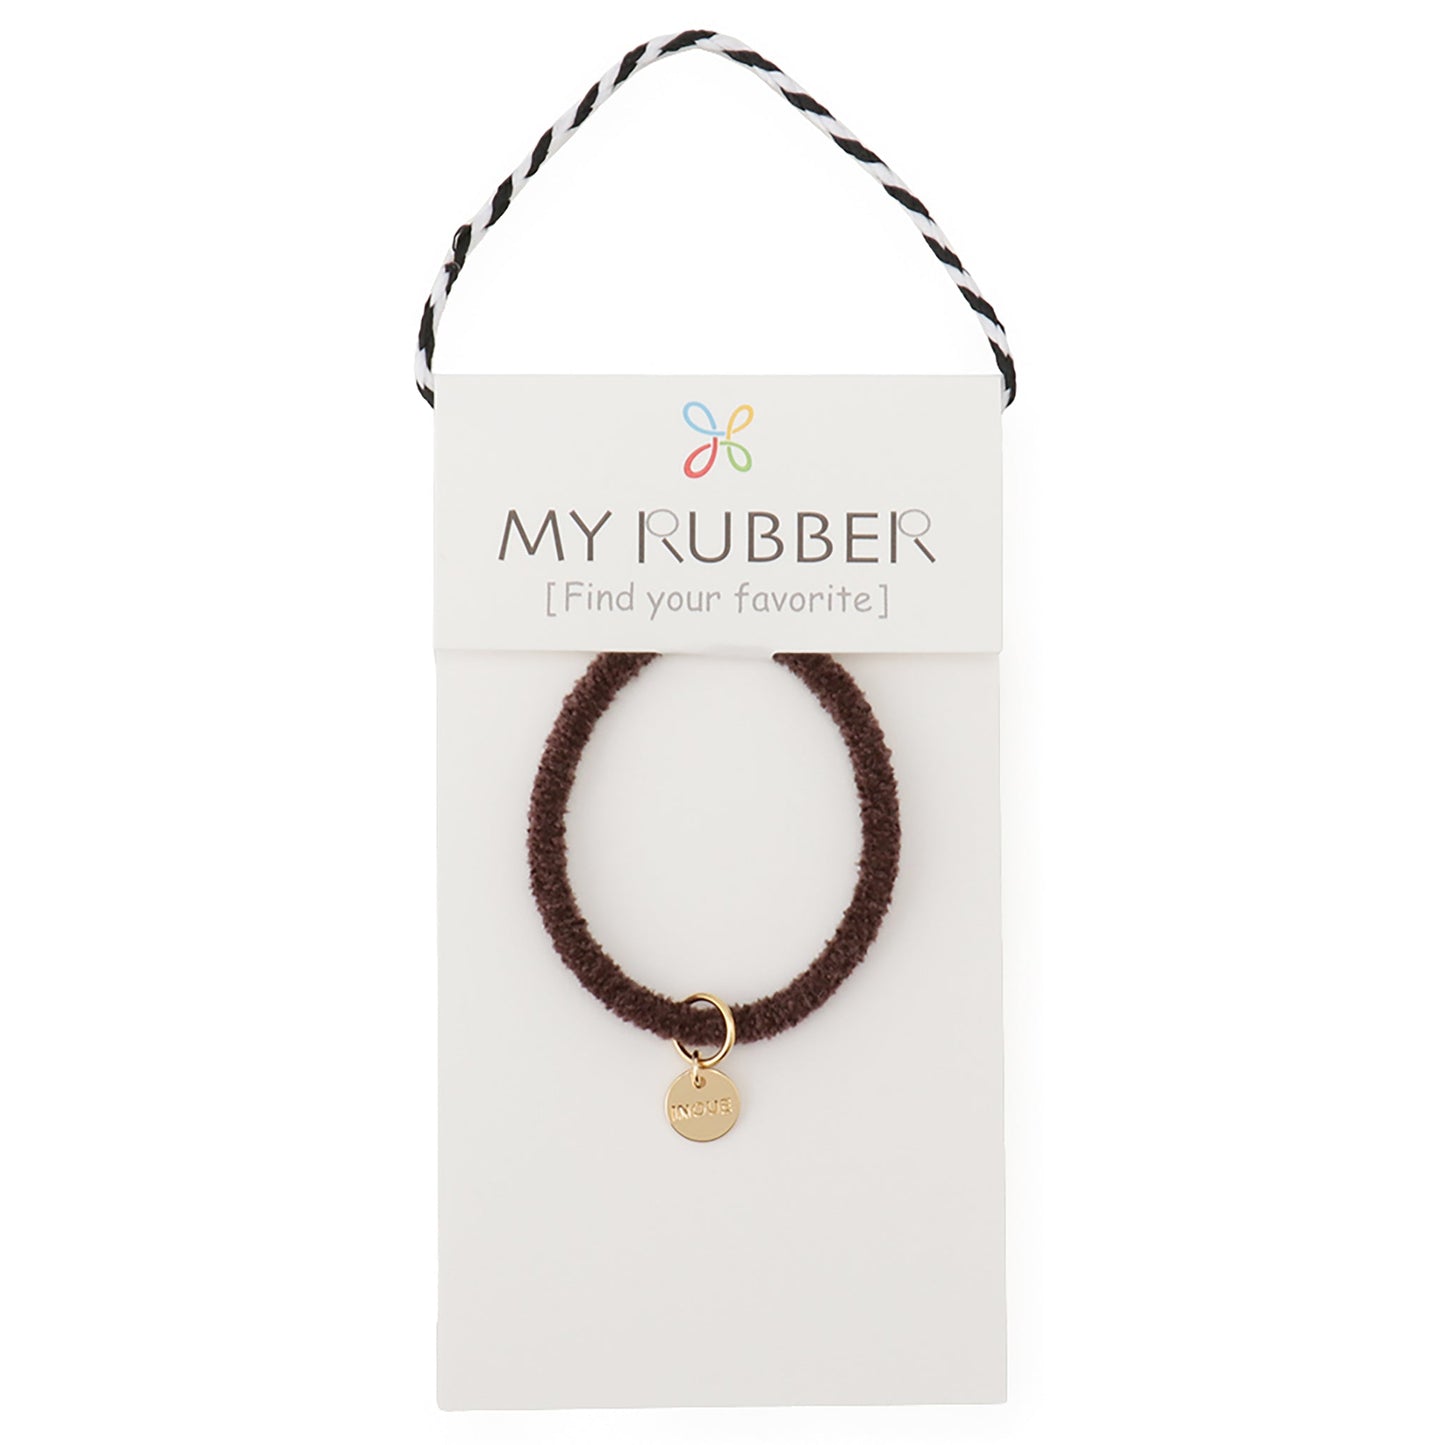 [MyRubber] モコリングS チョコレートブラウン / ヘアアクセサリー ヘアゴム 髪が細い 小さめ ヘアアレンジ カジュアル ミニサイズ